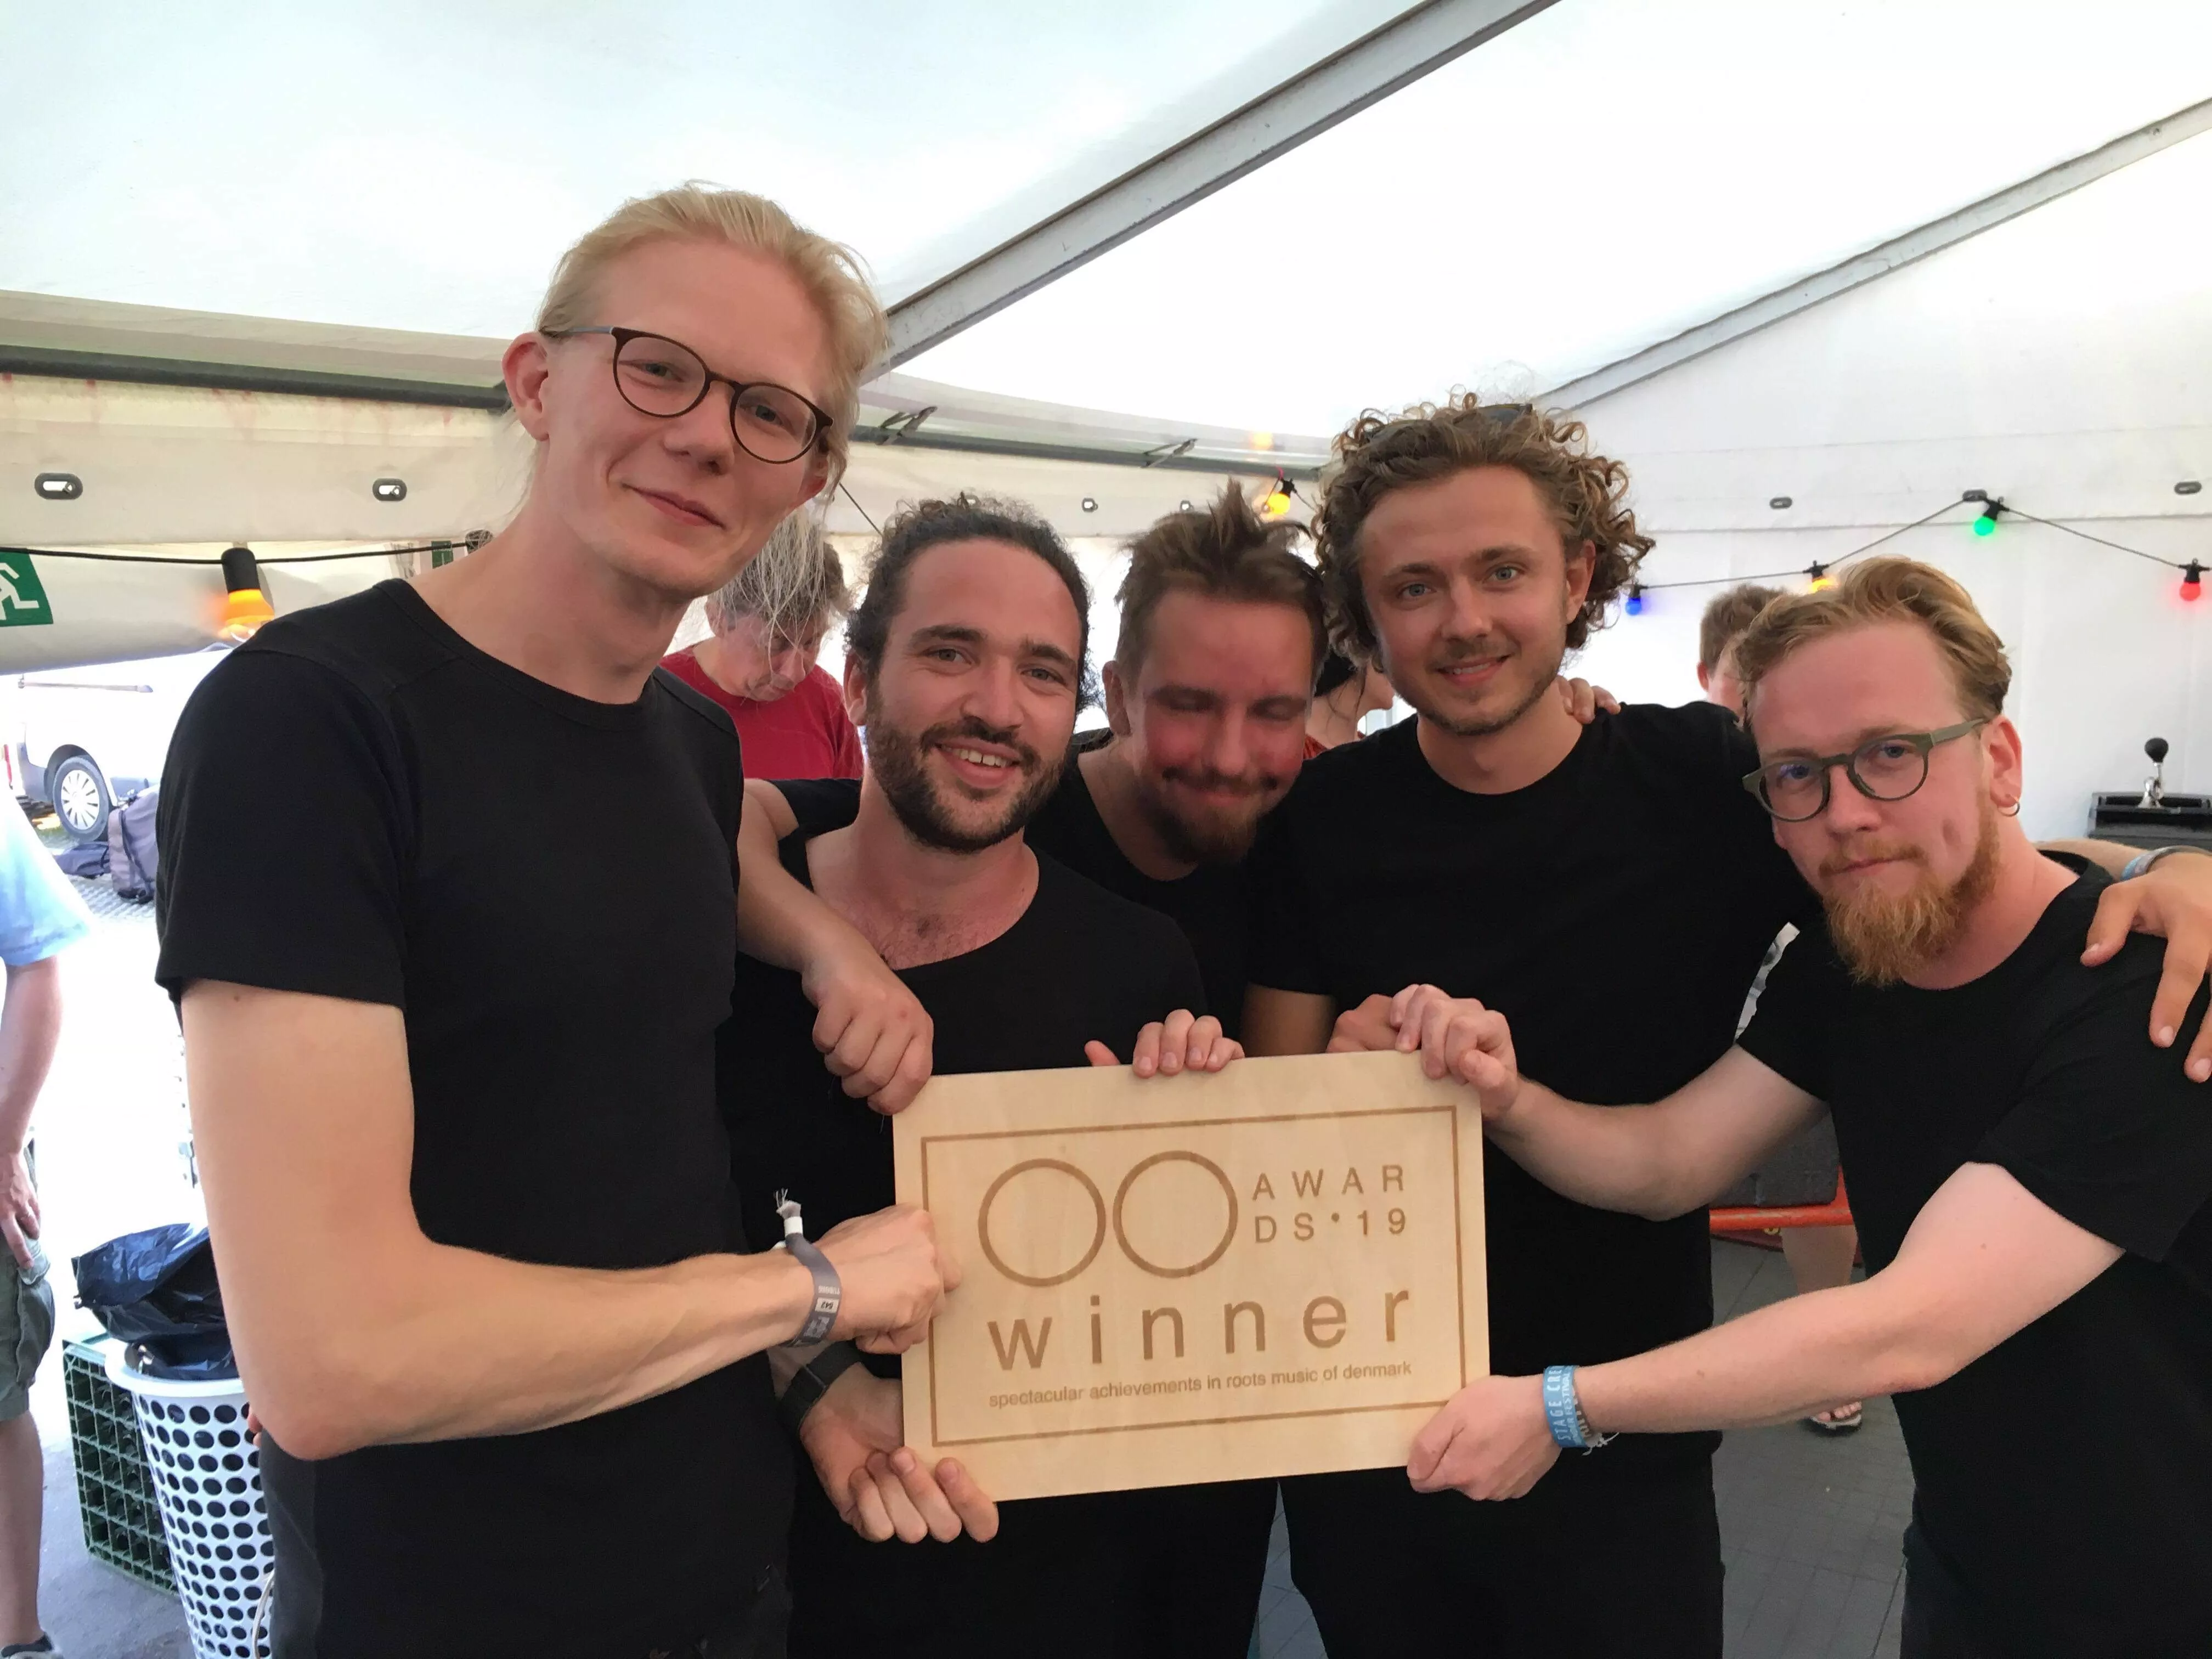 Den nye roots-musikpris OOaward er uddelt på Tønder Festival